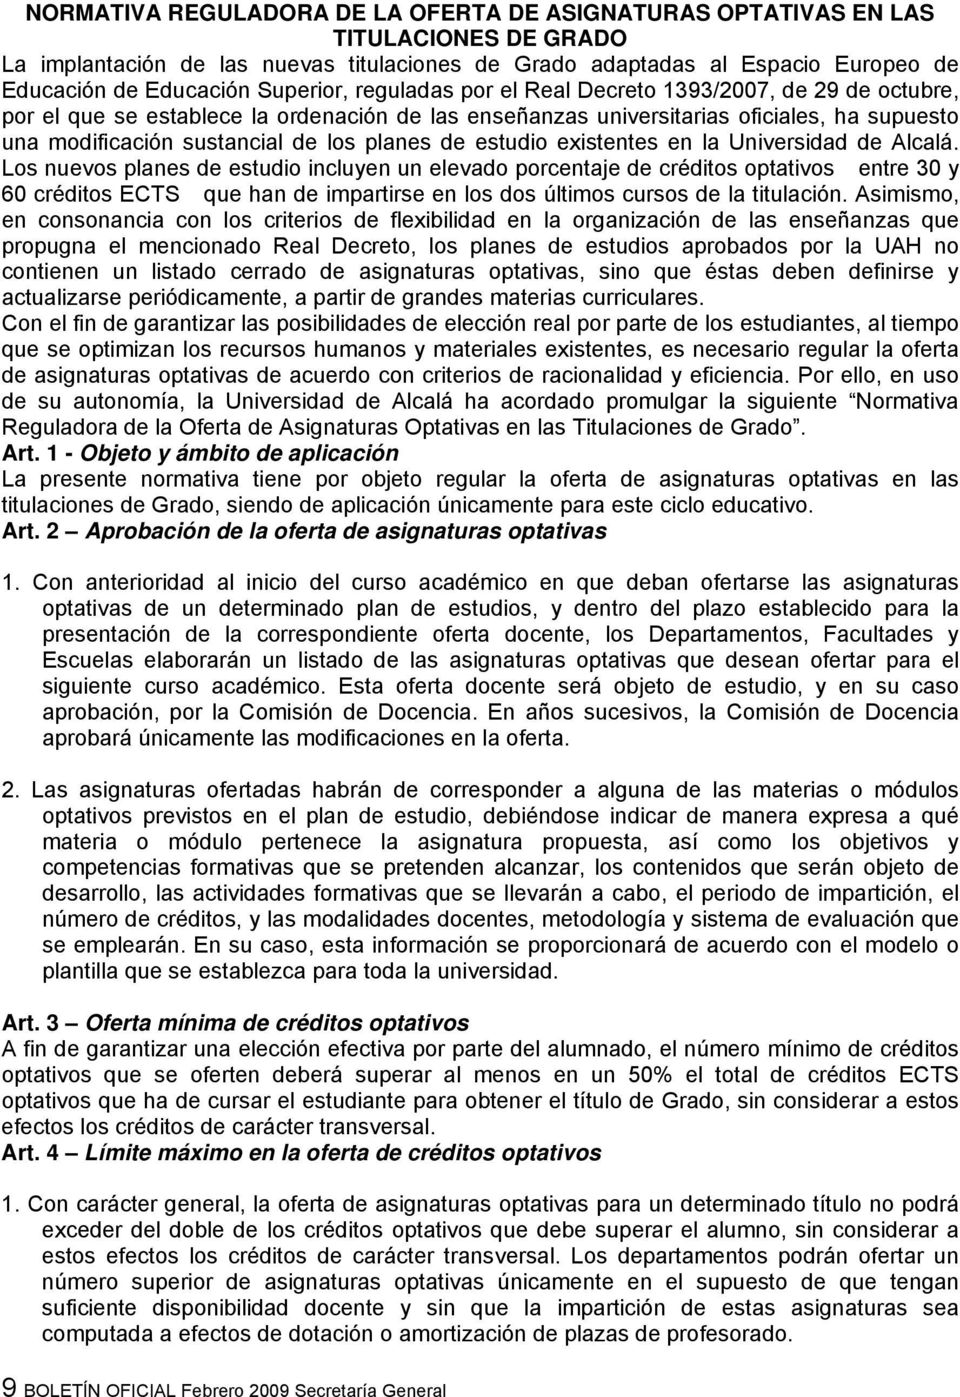 planes de estudio existentes en la Universidad de Alcalá.